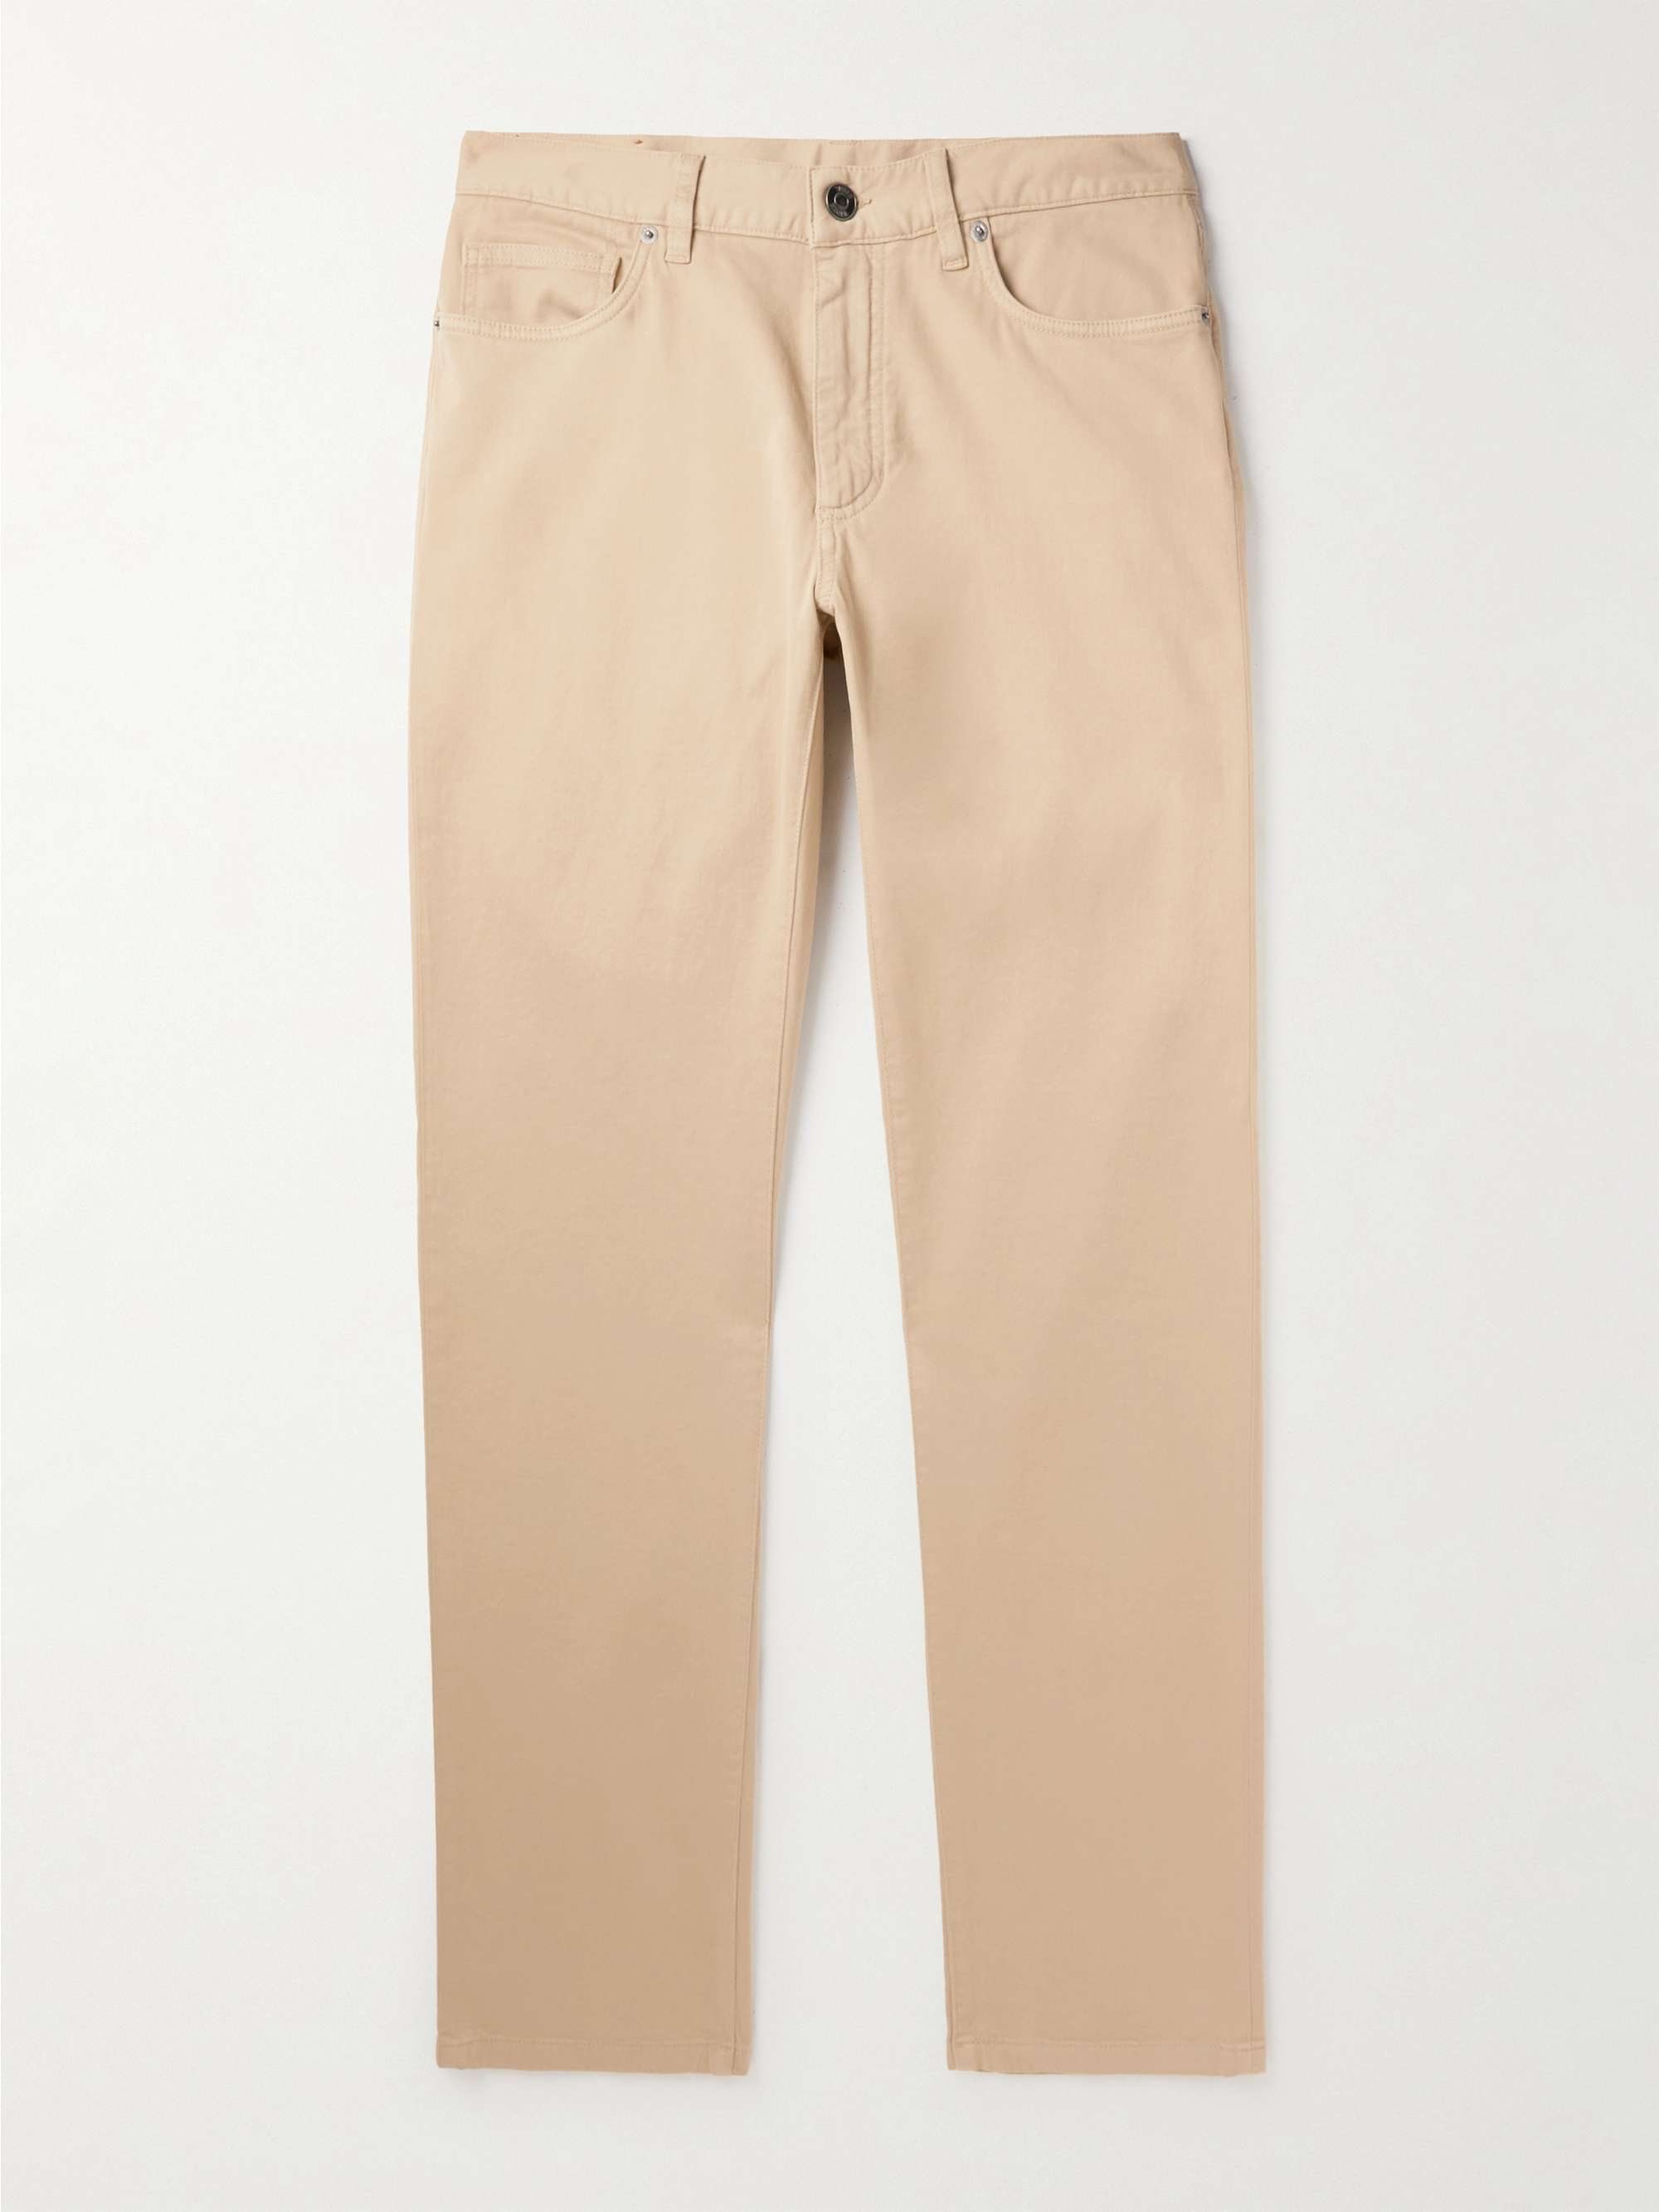 ZEGNA Slim-Fit Brushed Cotton-Blend Trousers for Men | MR PORTER